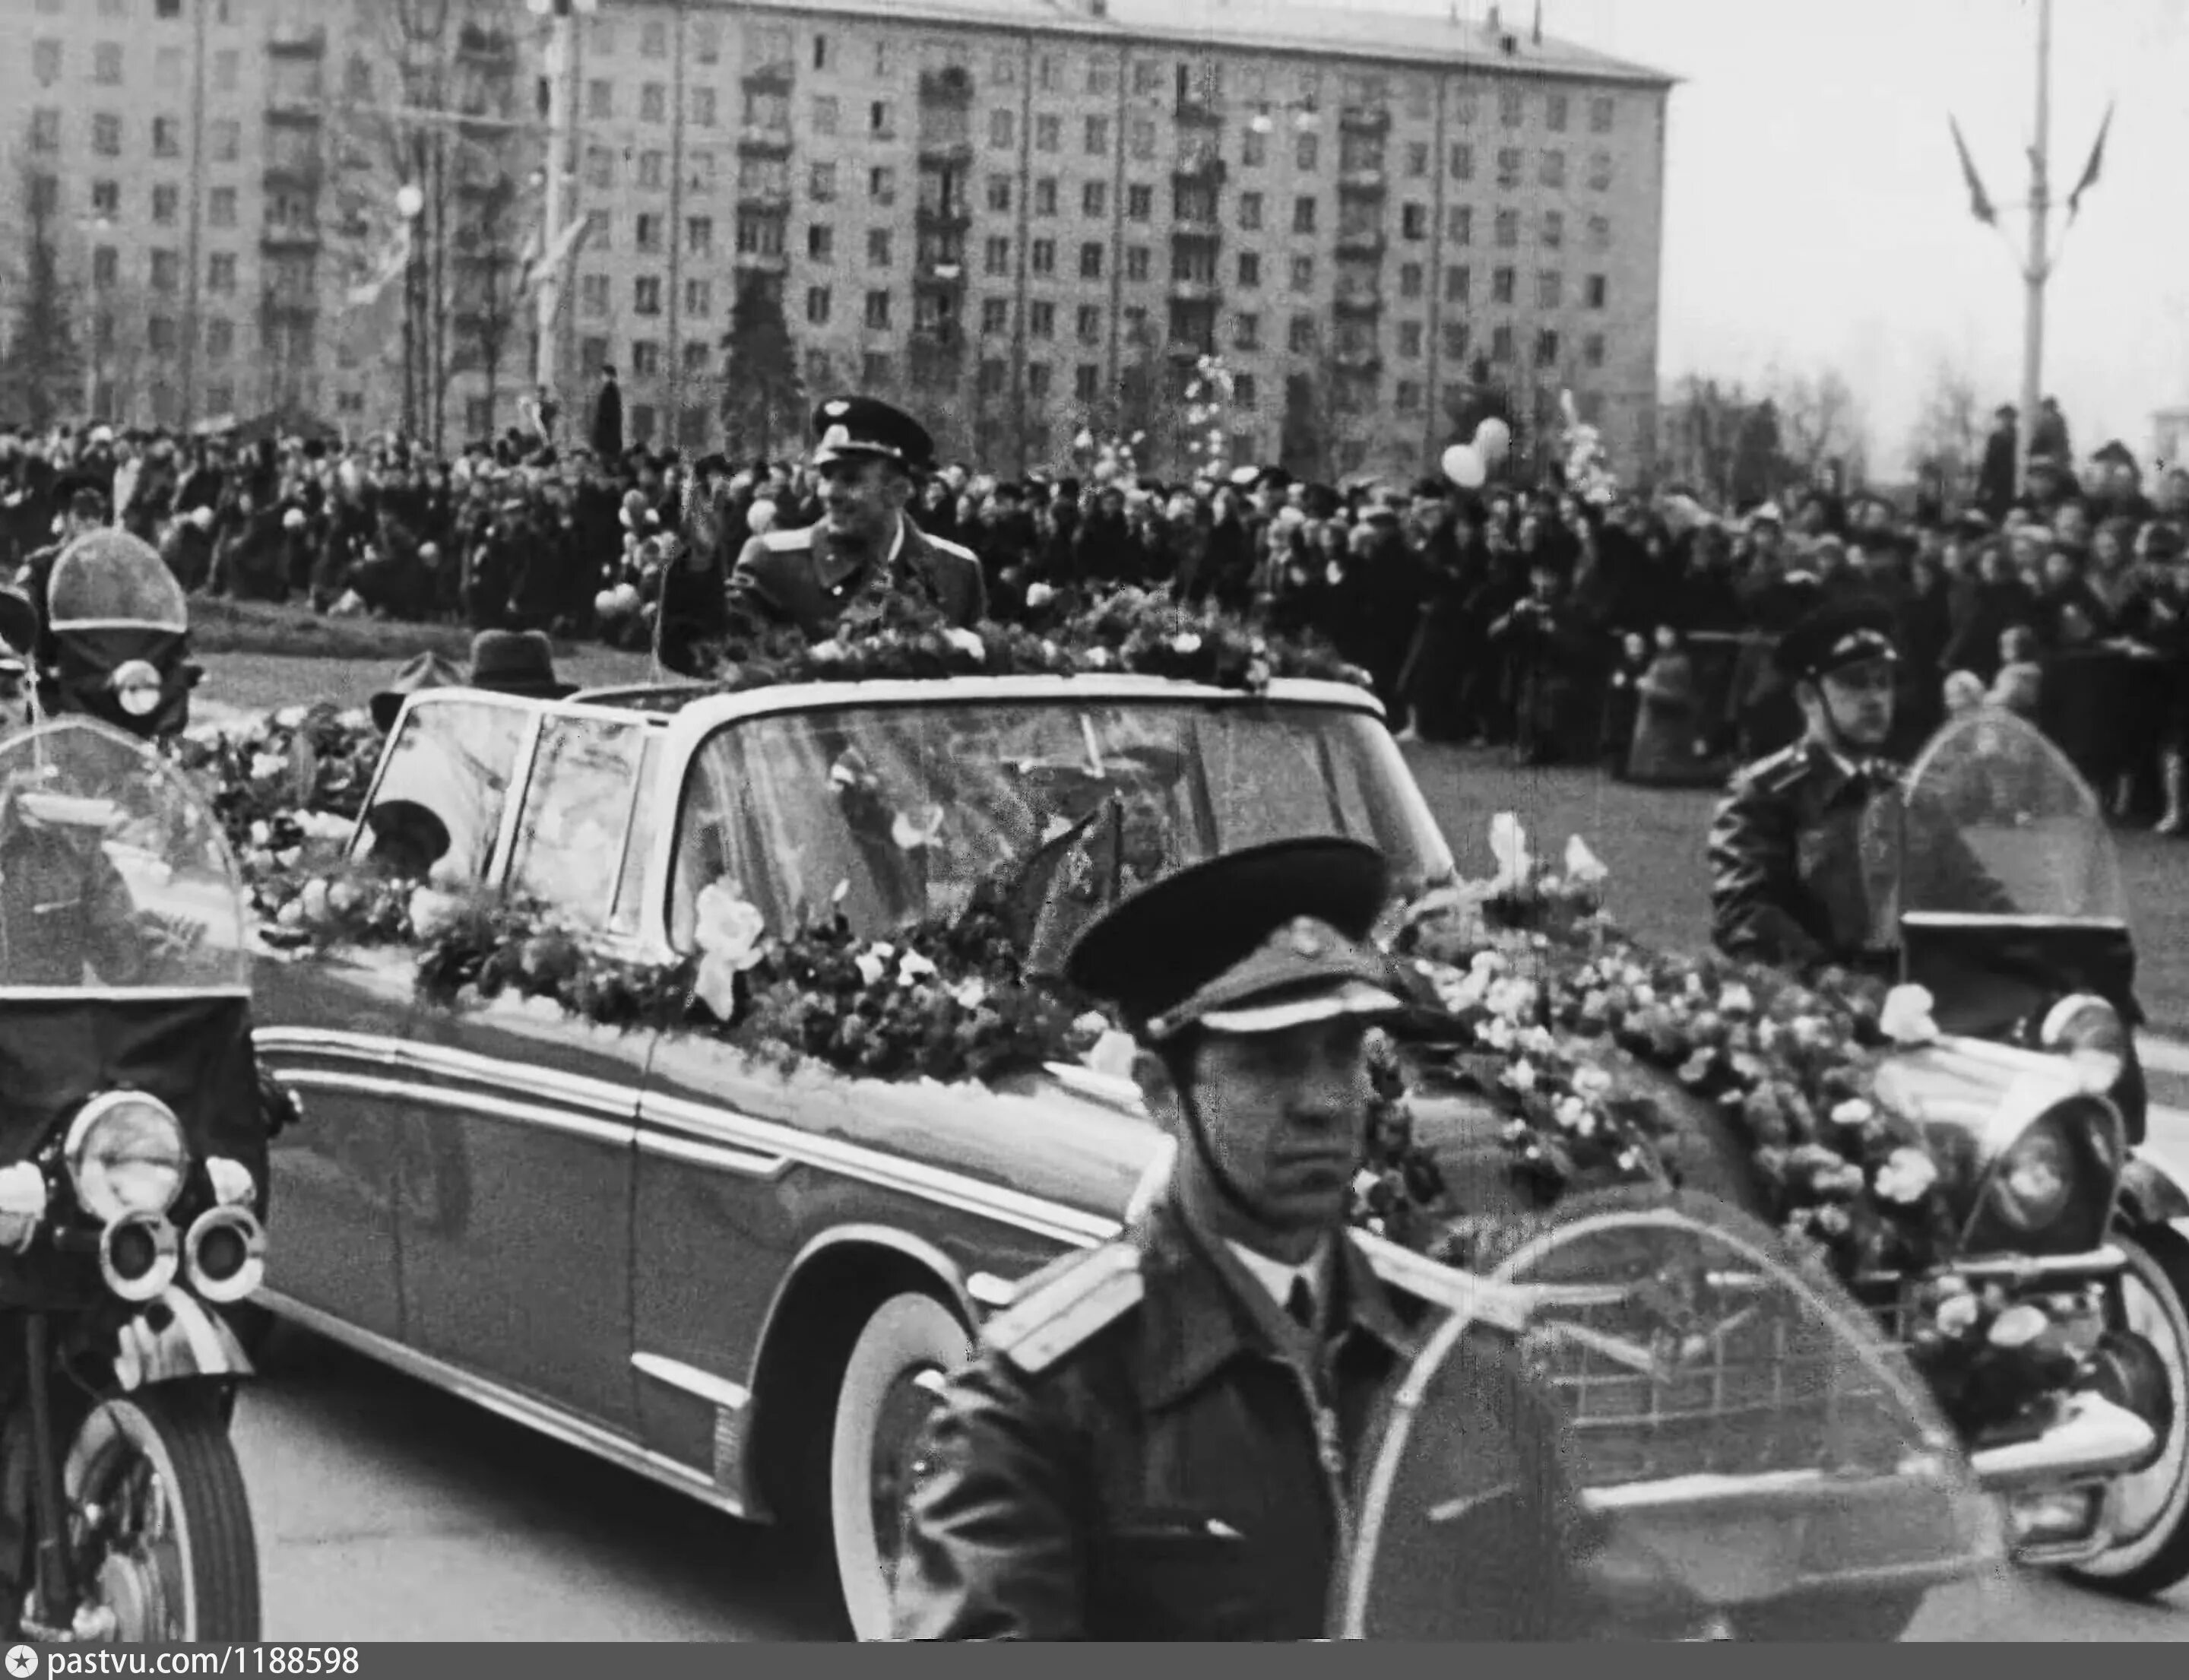 14 апреля 1961 года. Встреча Юрия Гагарина в Москве 14 апреля 1961 года. Кортеж Юрия Гагарина Москва 1961. Гагарин на красной площади 1961. Встреча Гагарина Ленинский проспект.